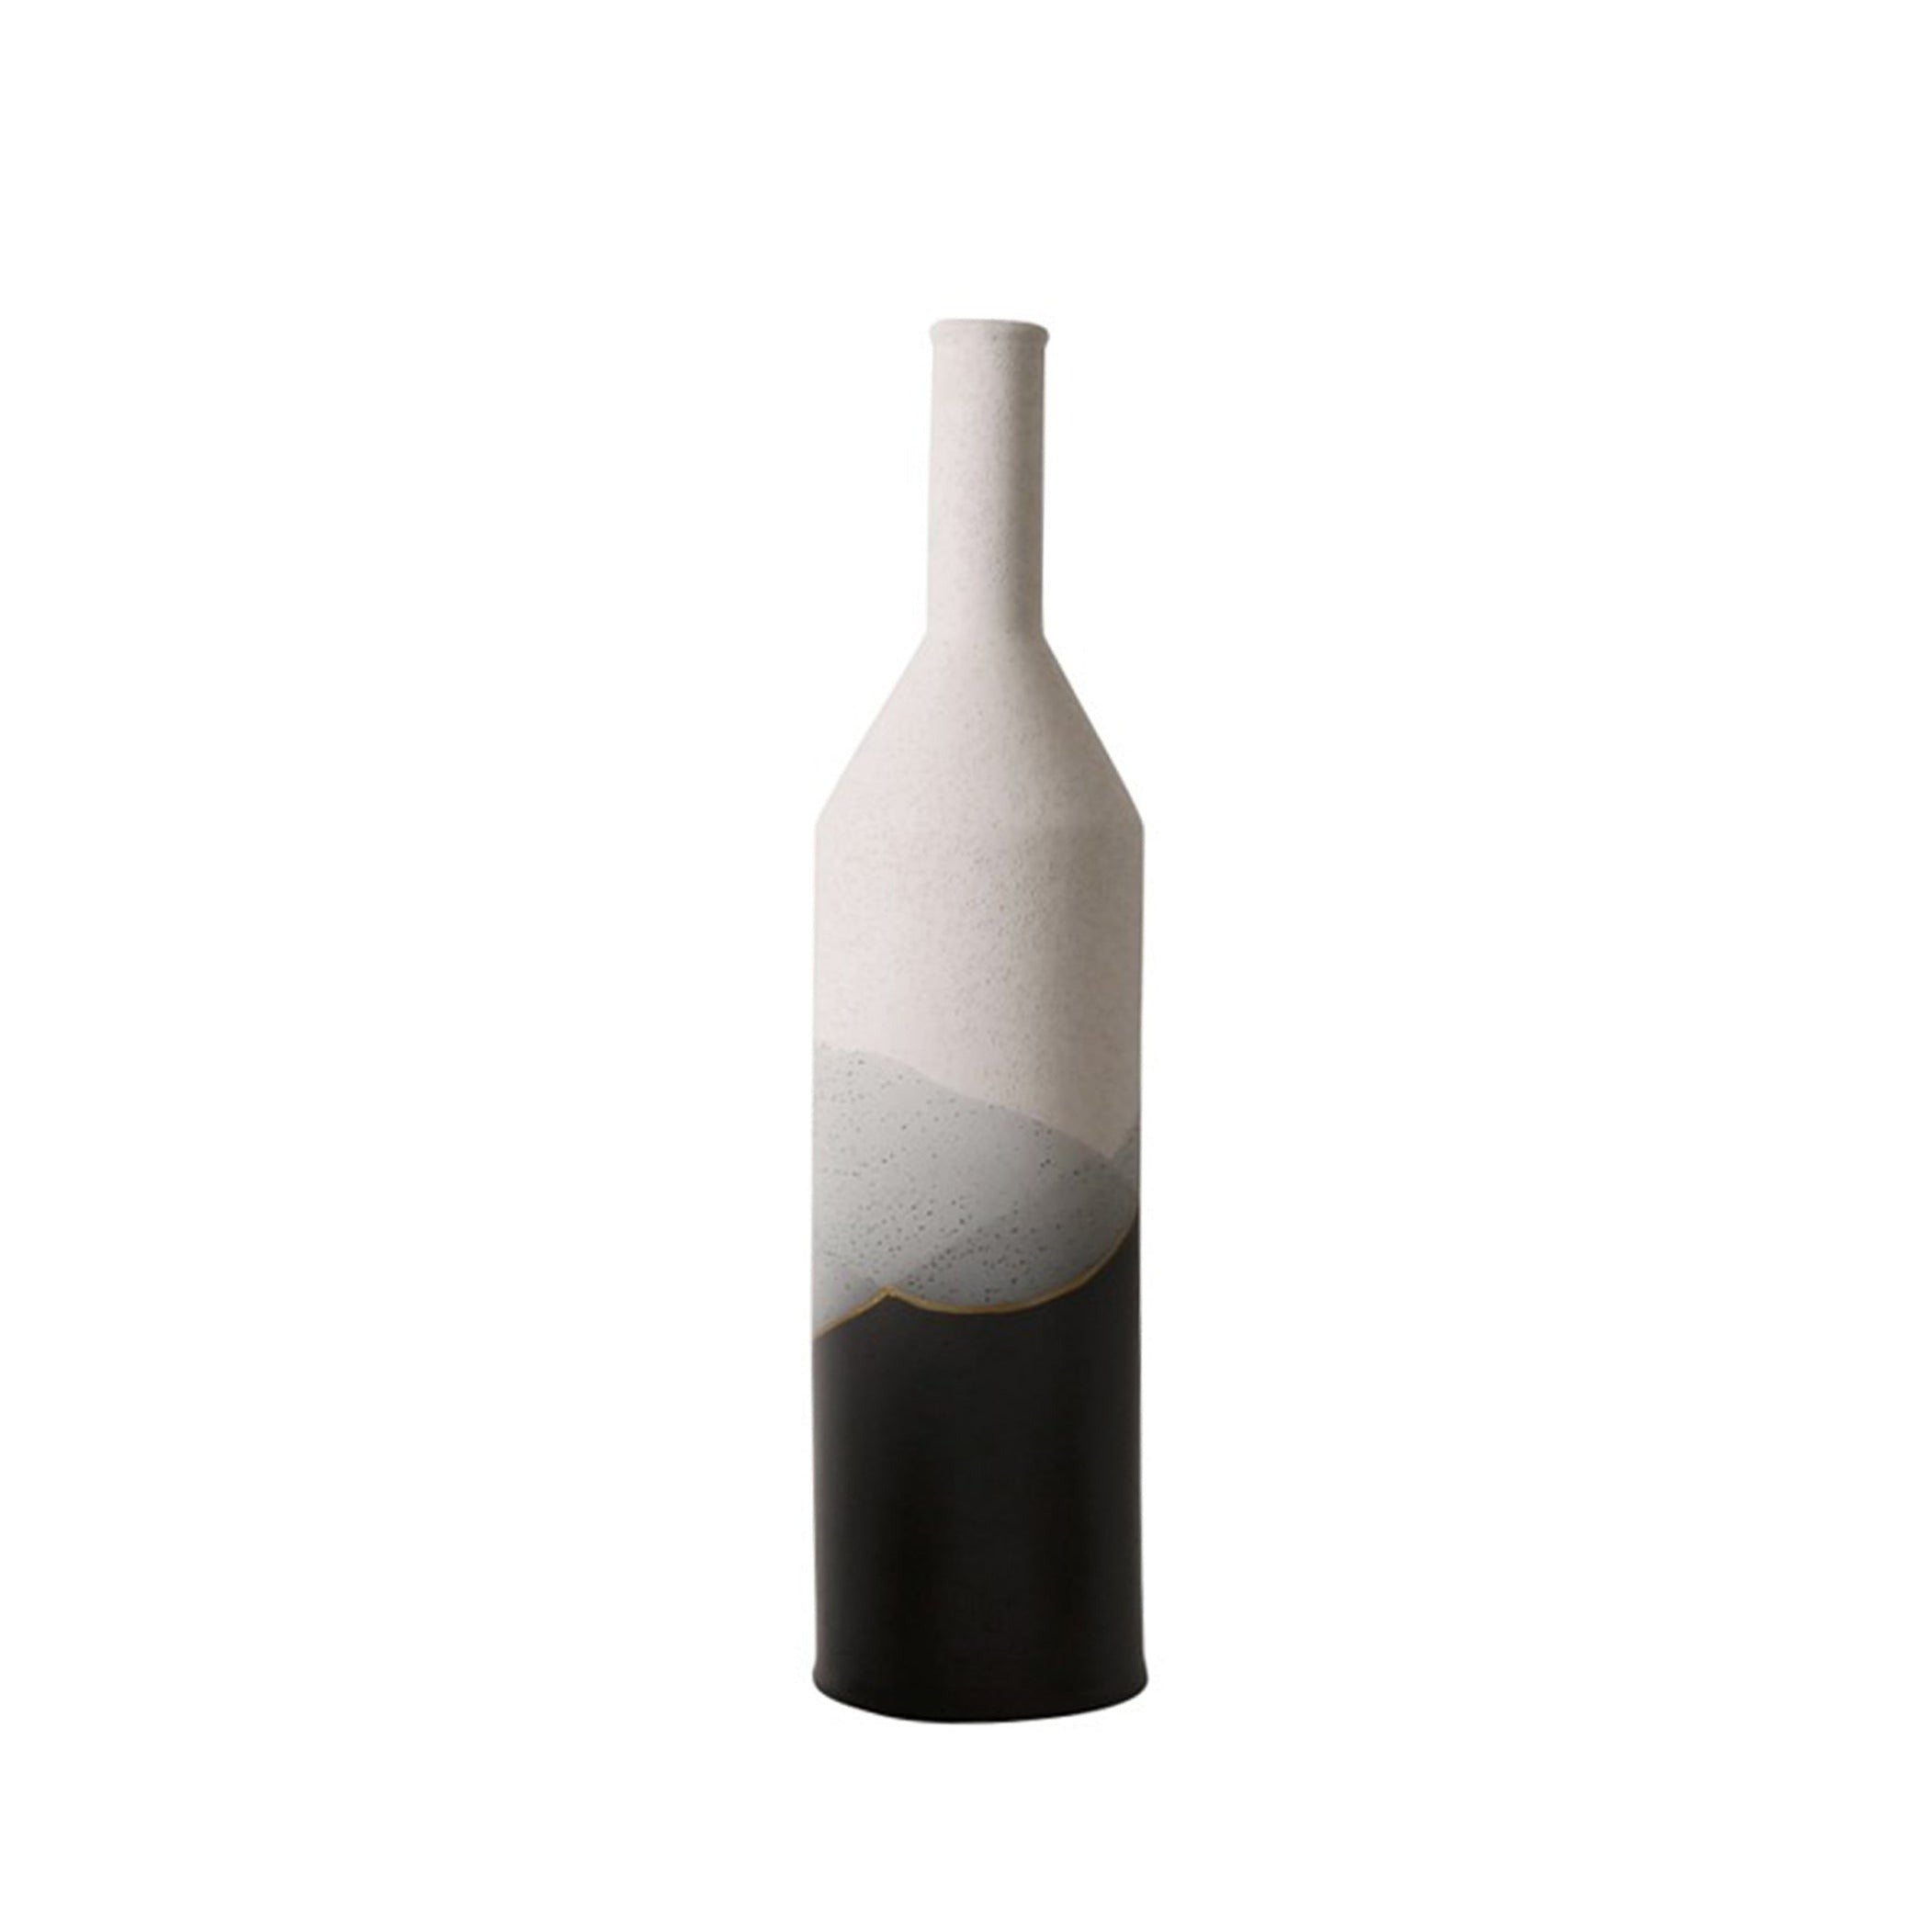 Black Bottle Shaped Vase